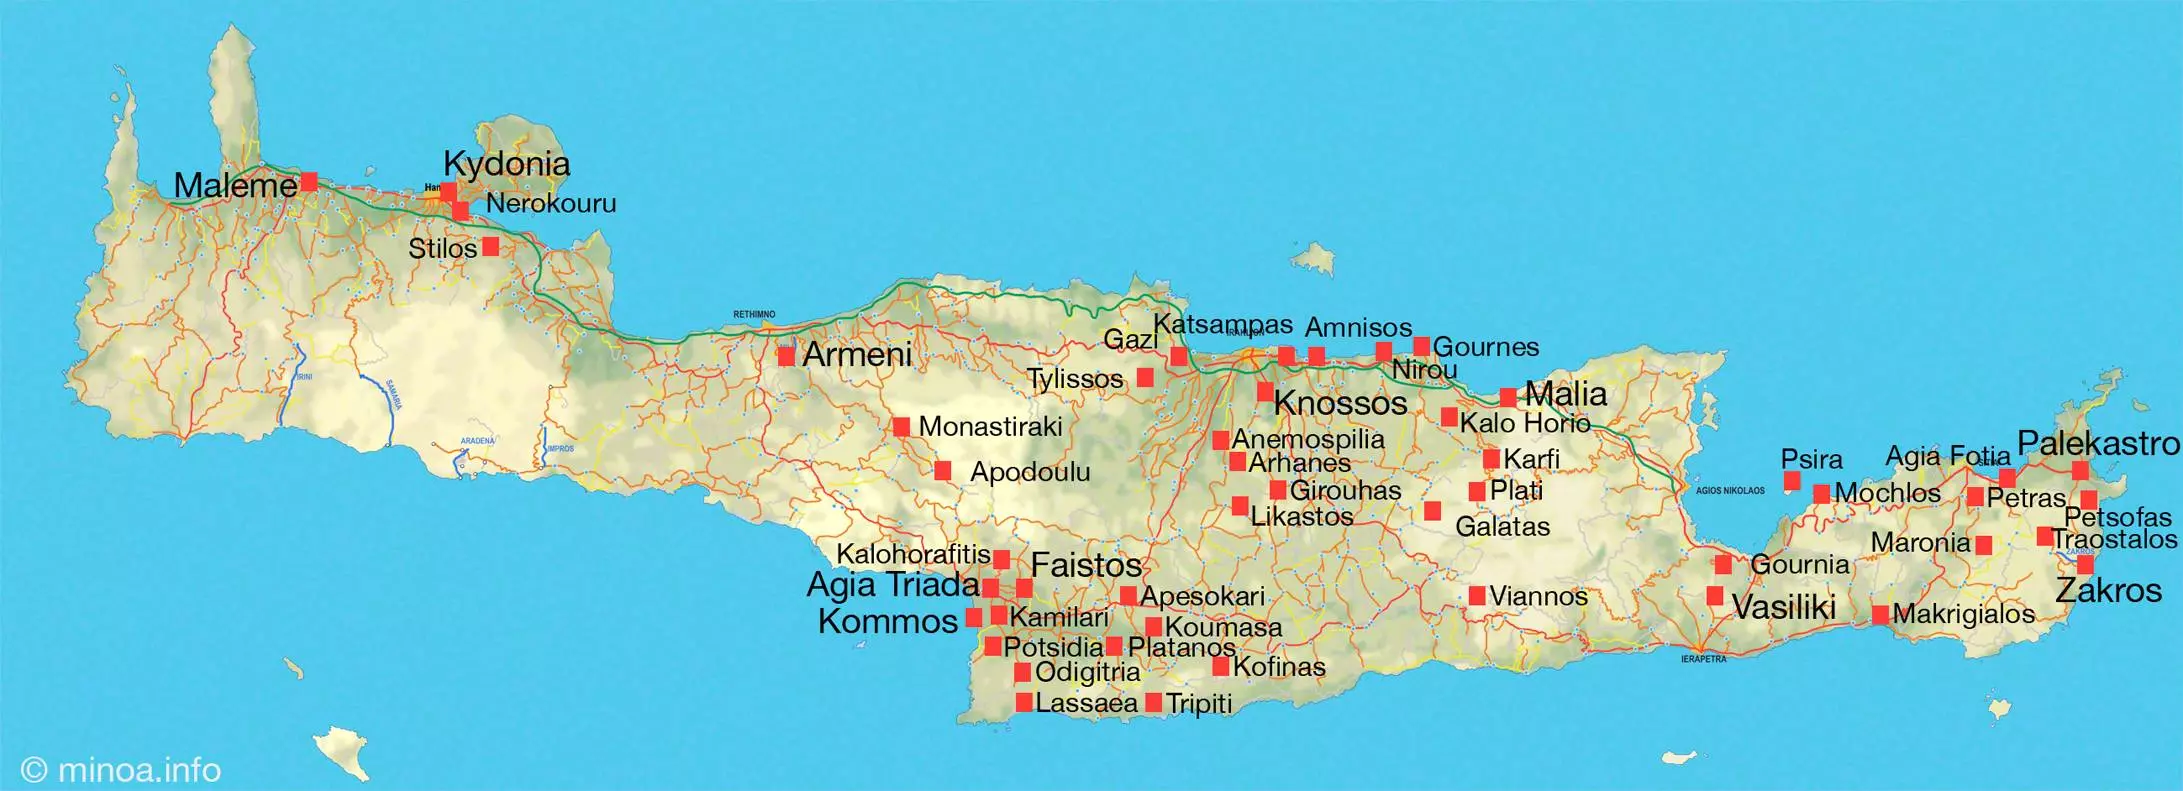 Аэропорты на крите: описание, расположение, маршруты на карте